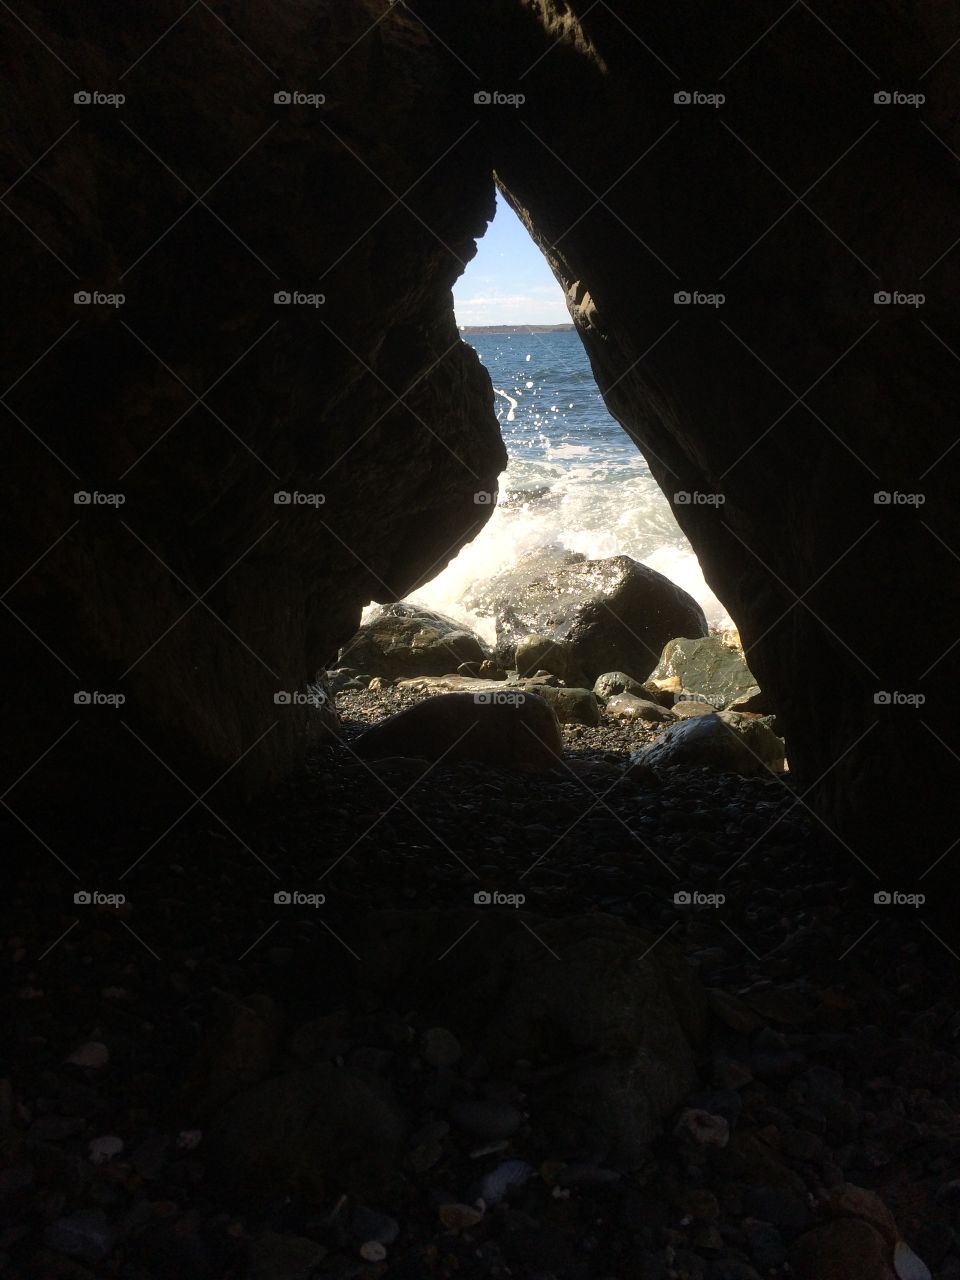 Ocean through a rock